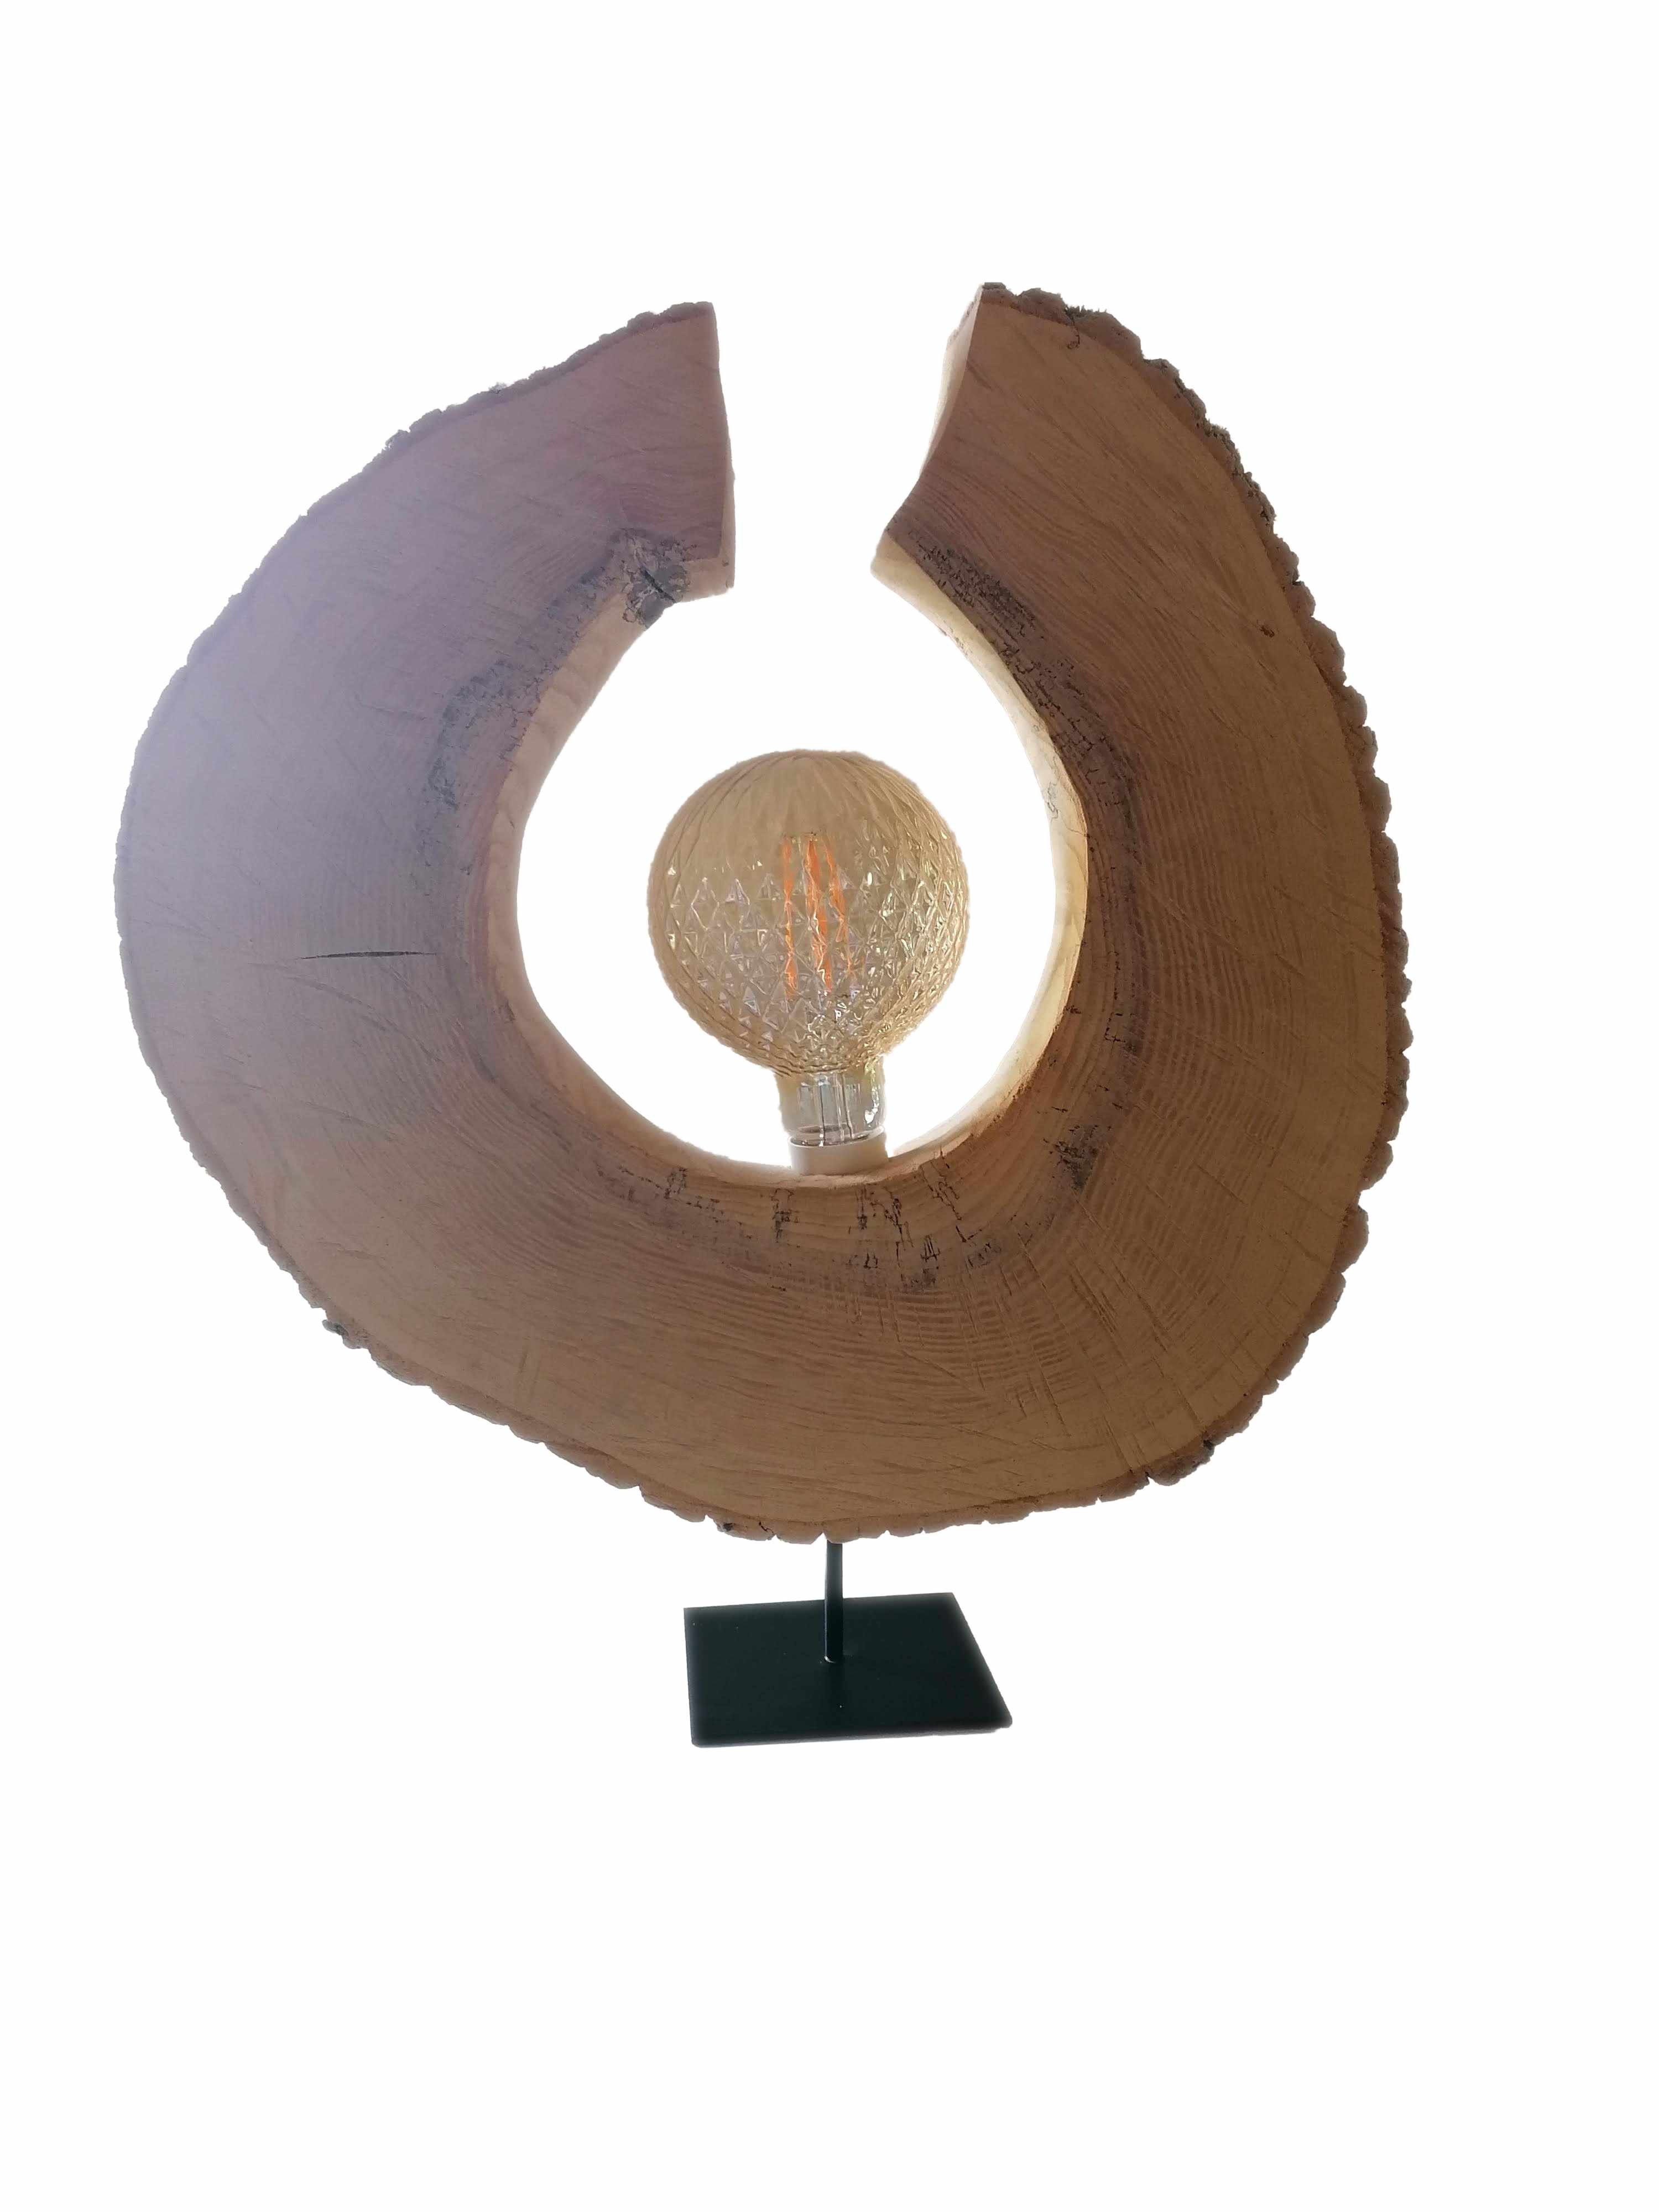 Lampe aus schweizer Holz